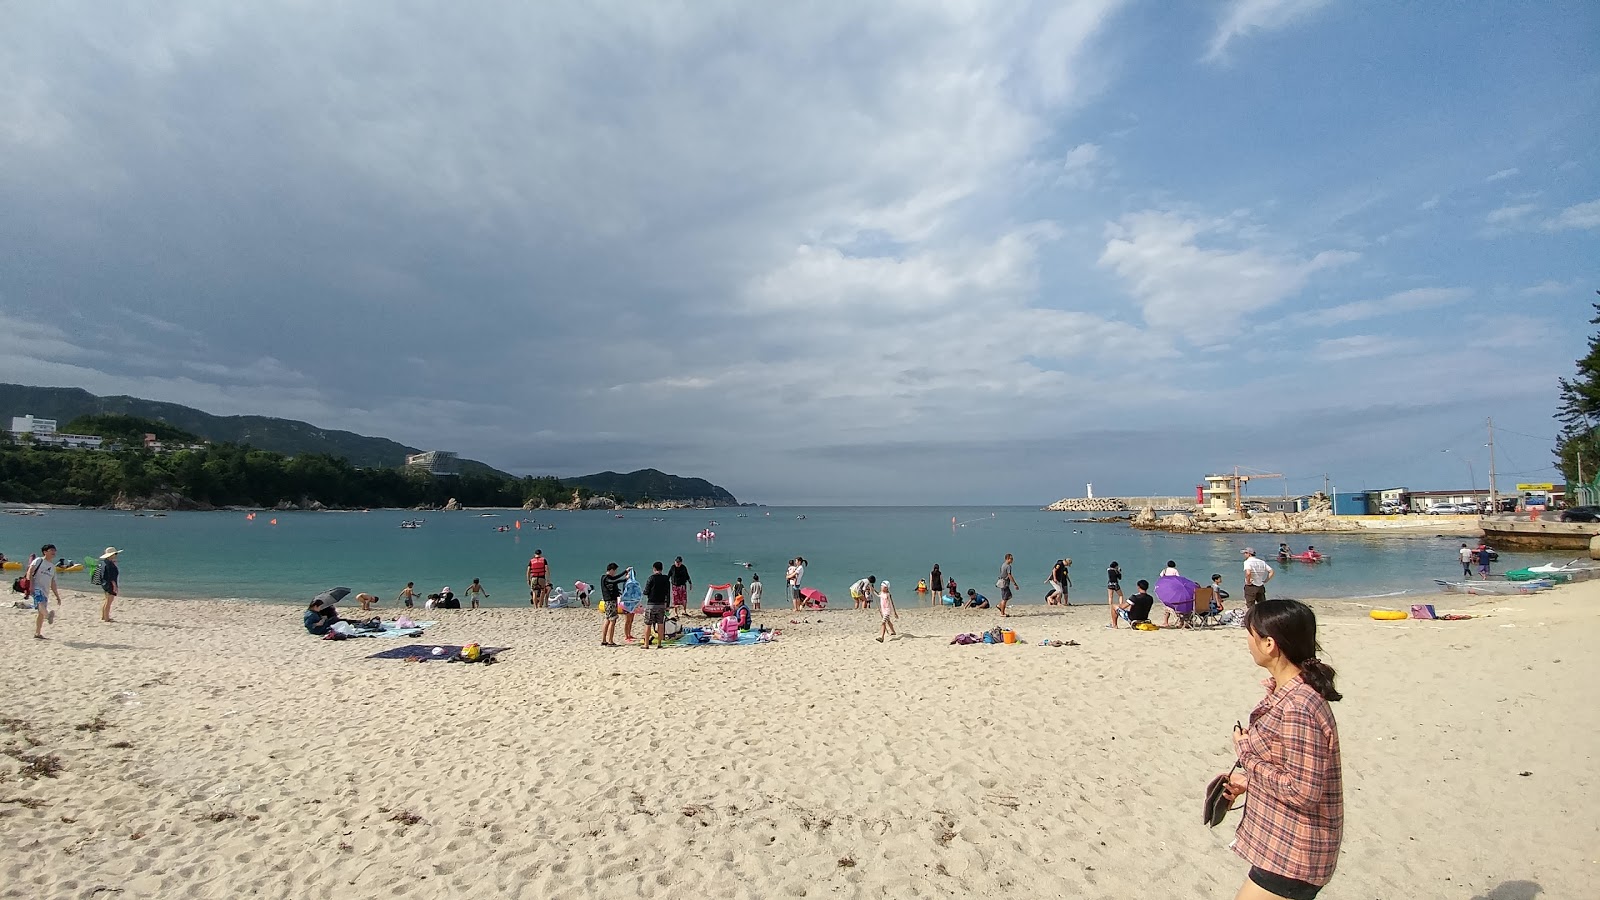 Fotografie cu Jangho Beach - locul popular printre cunoscătorii de relaxare